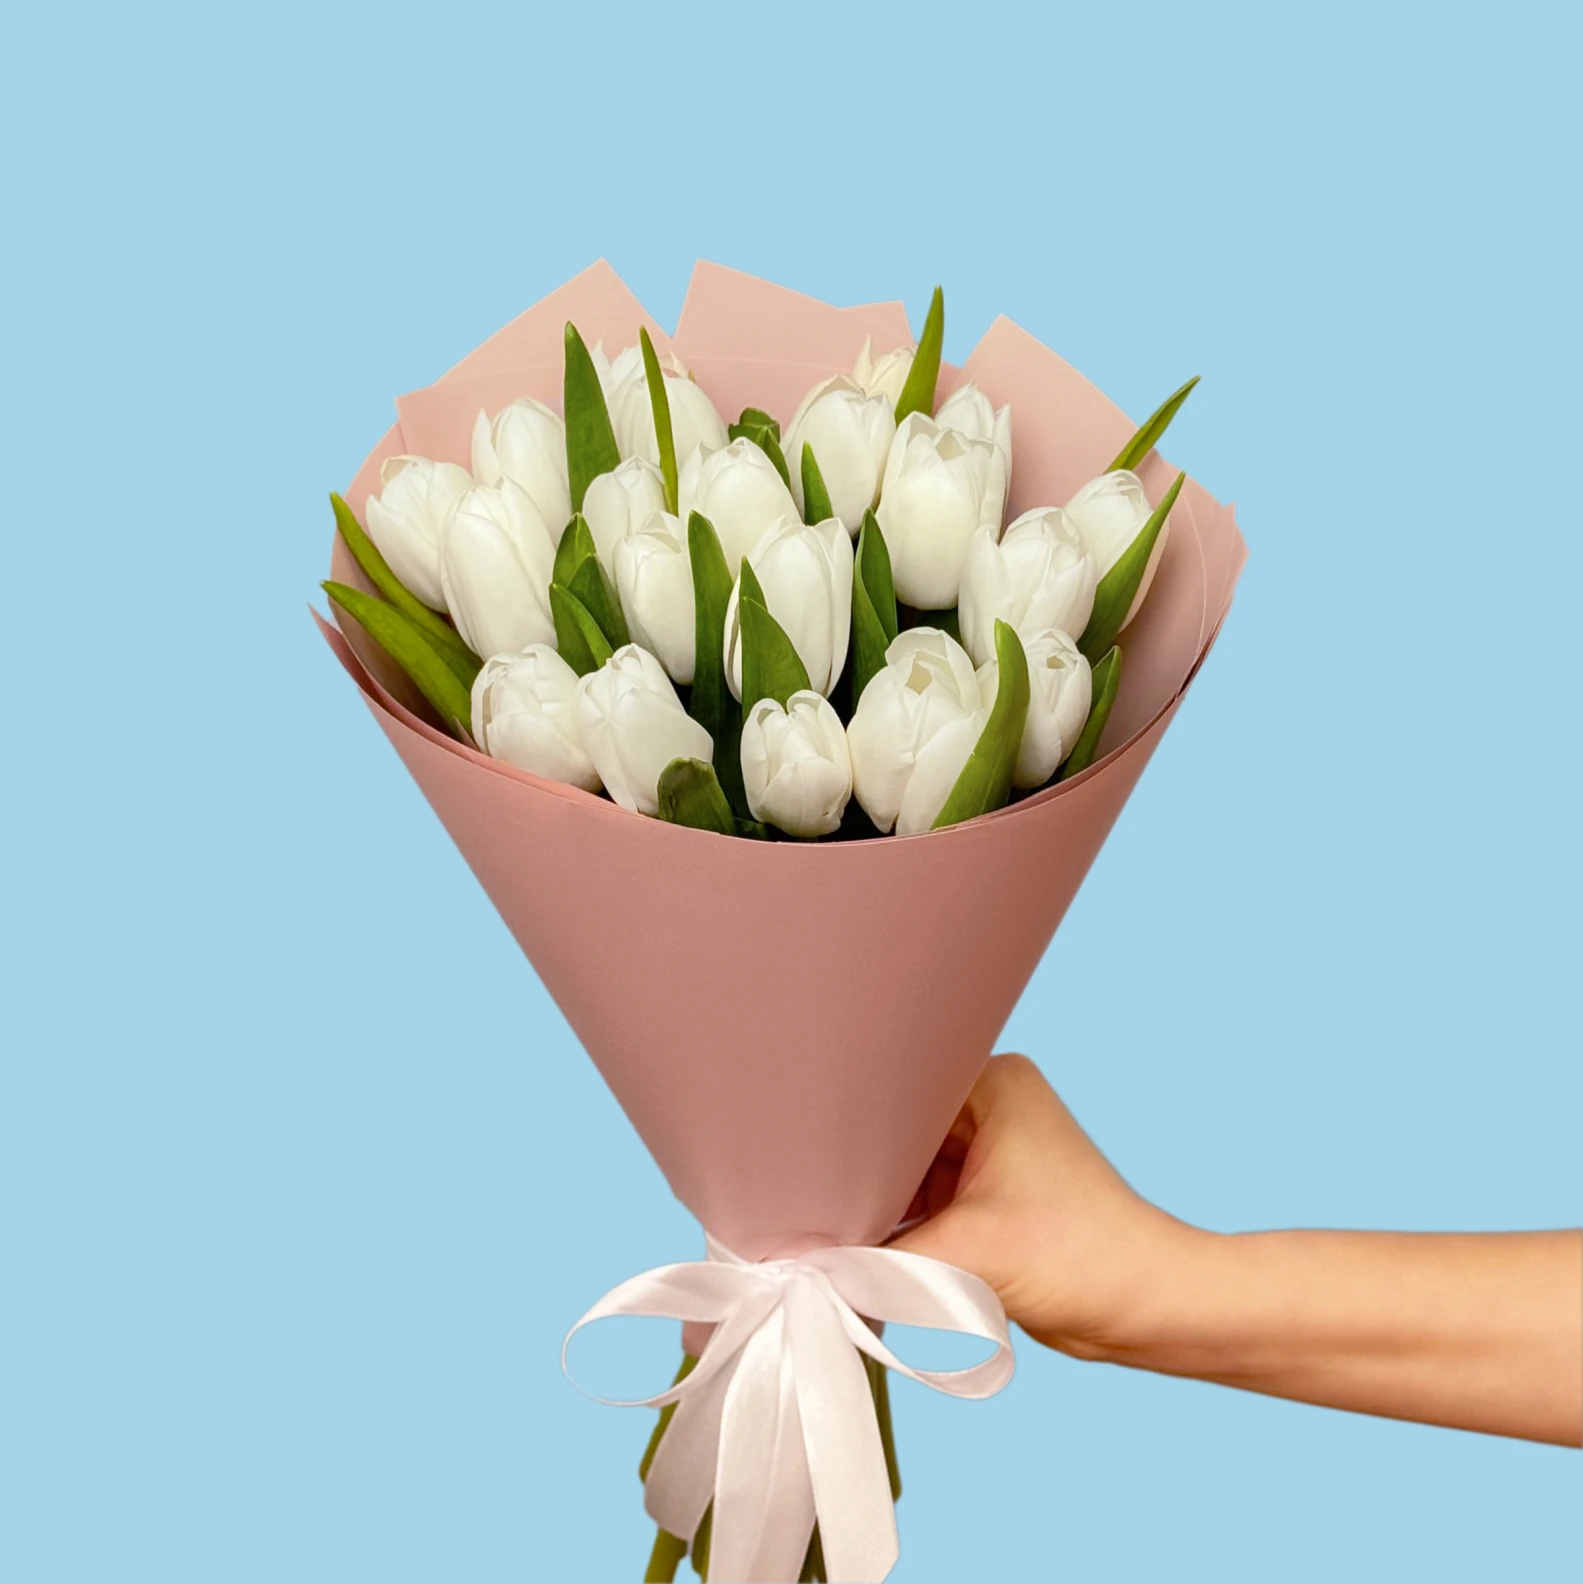 20 White Tulips - image №2